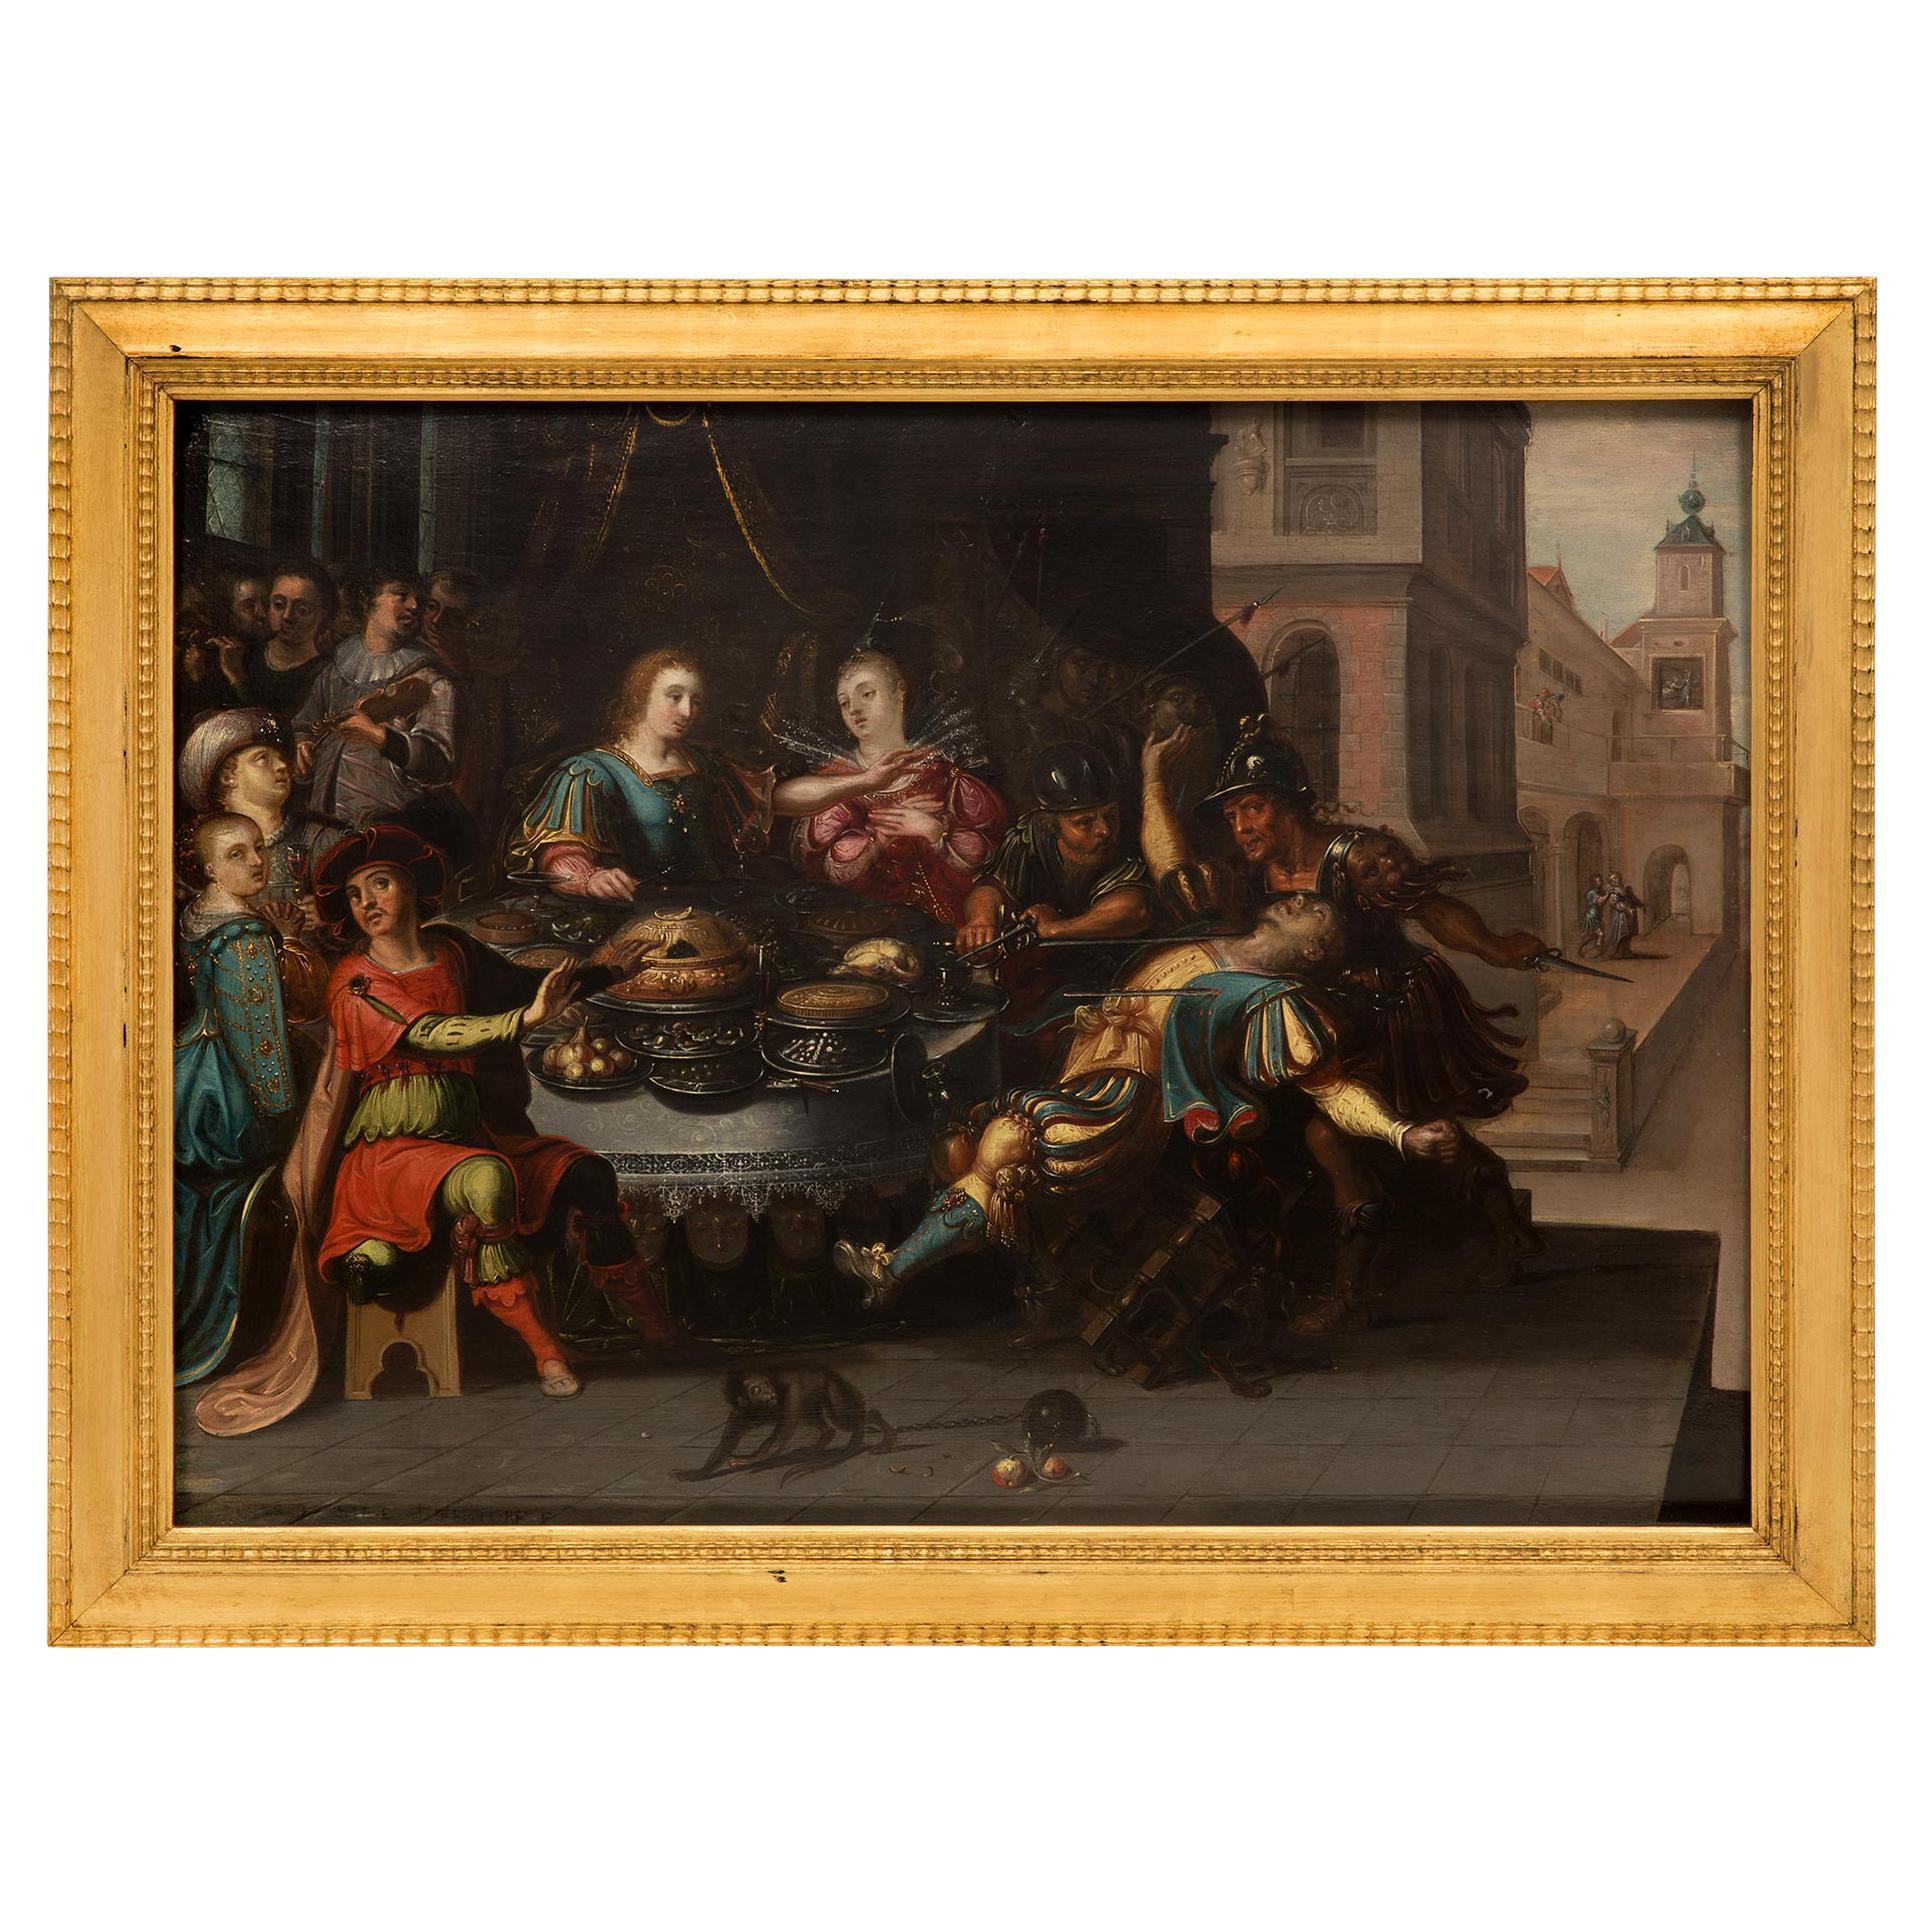 Peinture hollandaise du 17ème siècle à l'huile sur bois à la manière de Frans Francken